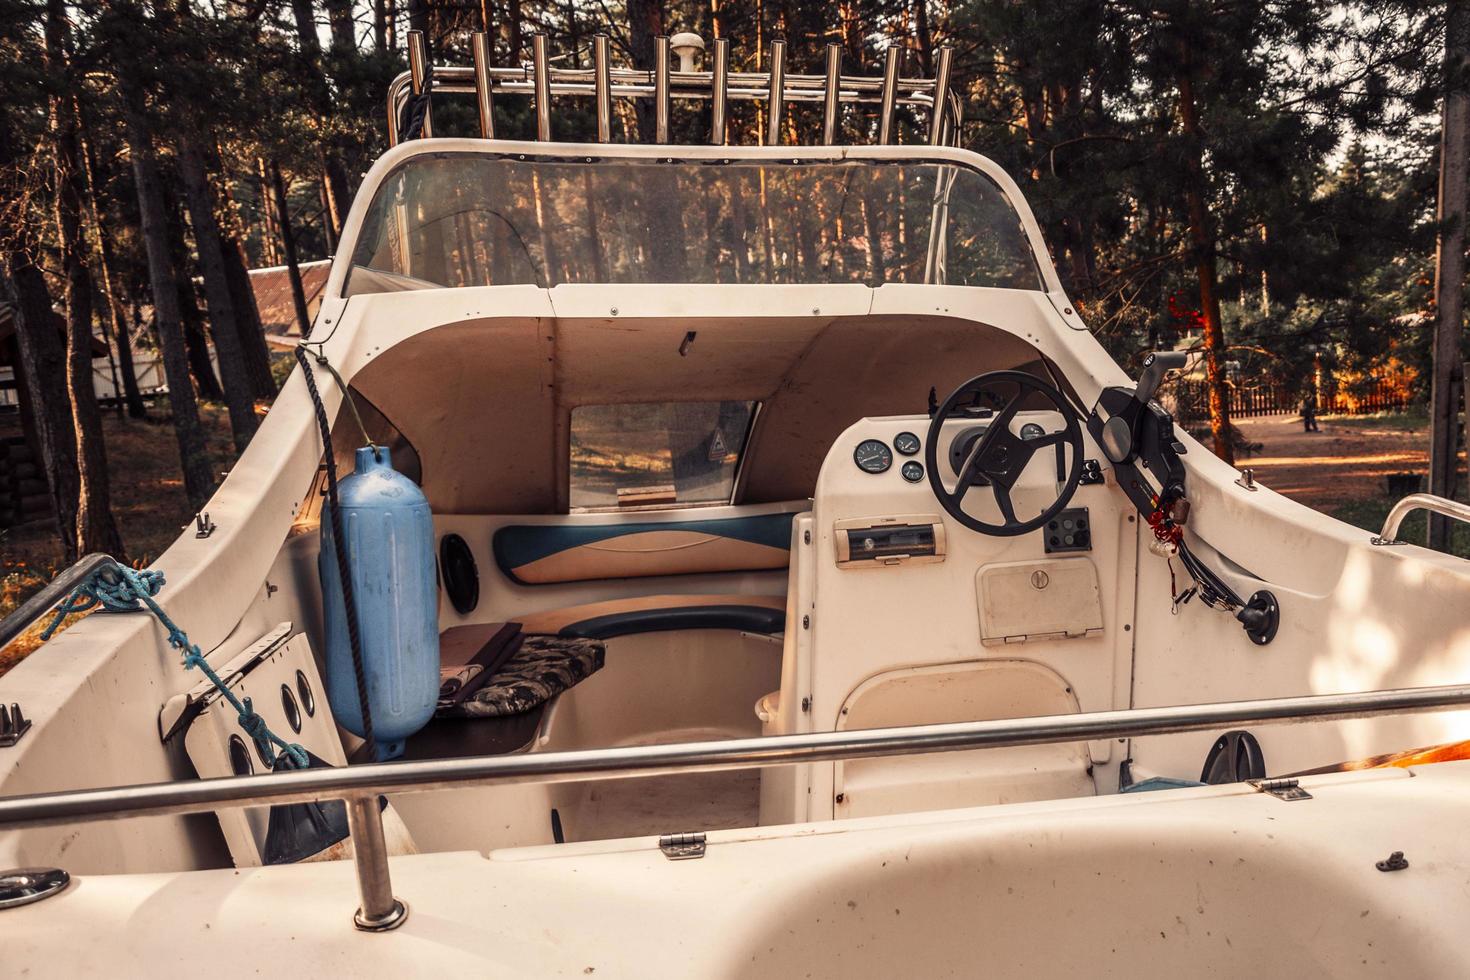 la cabina de una lancha rápida, el interior de un barco de recreo para turistas de recreo y pesca foto